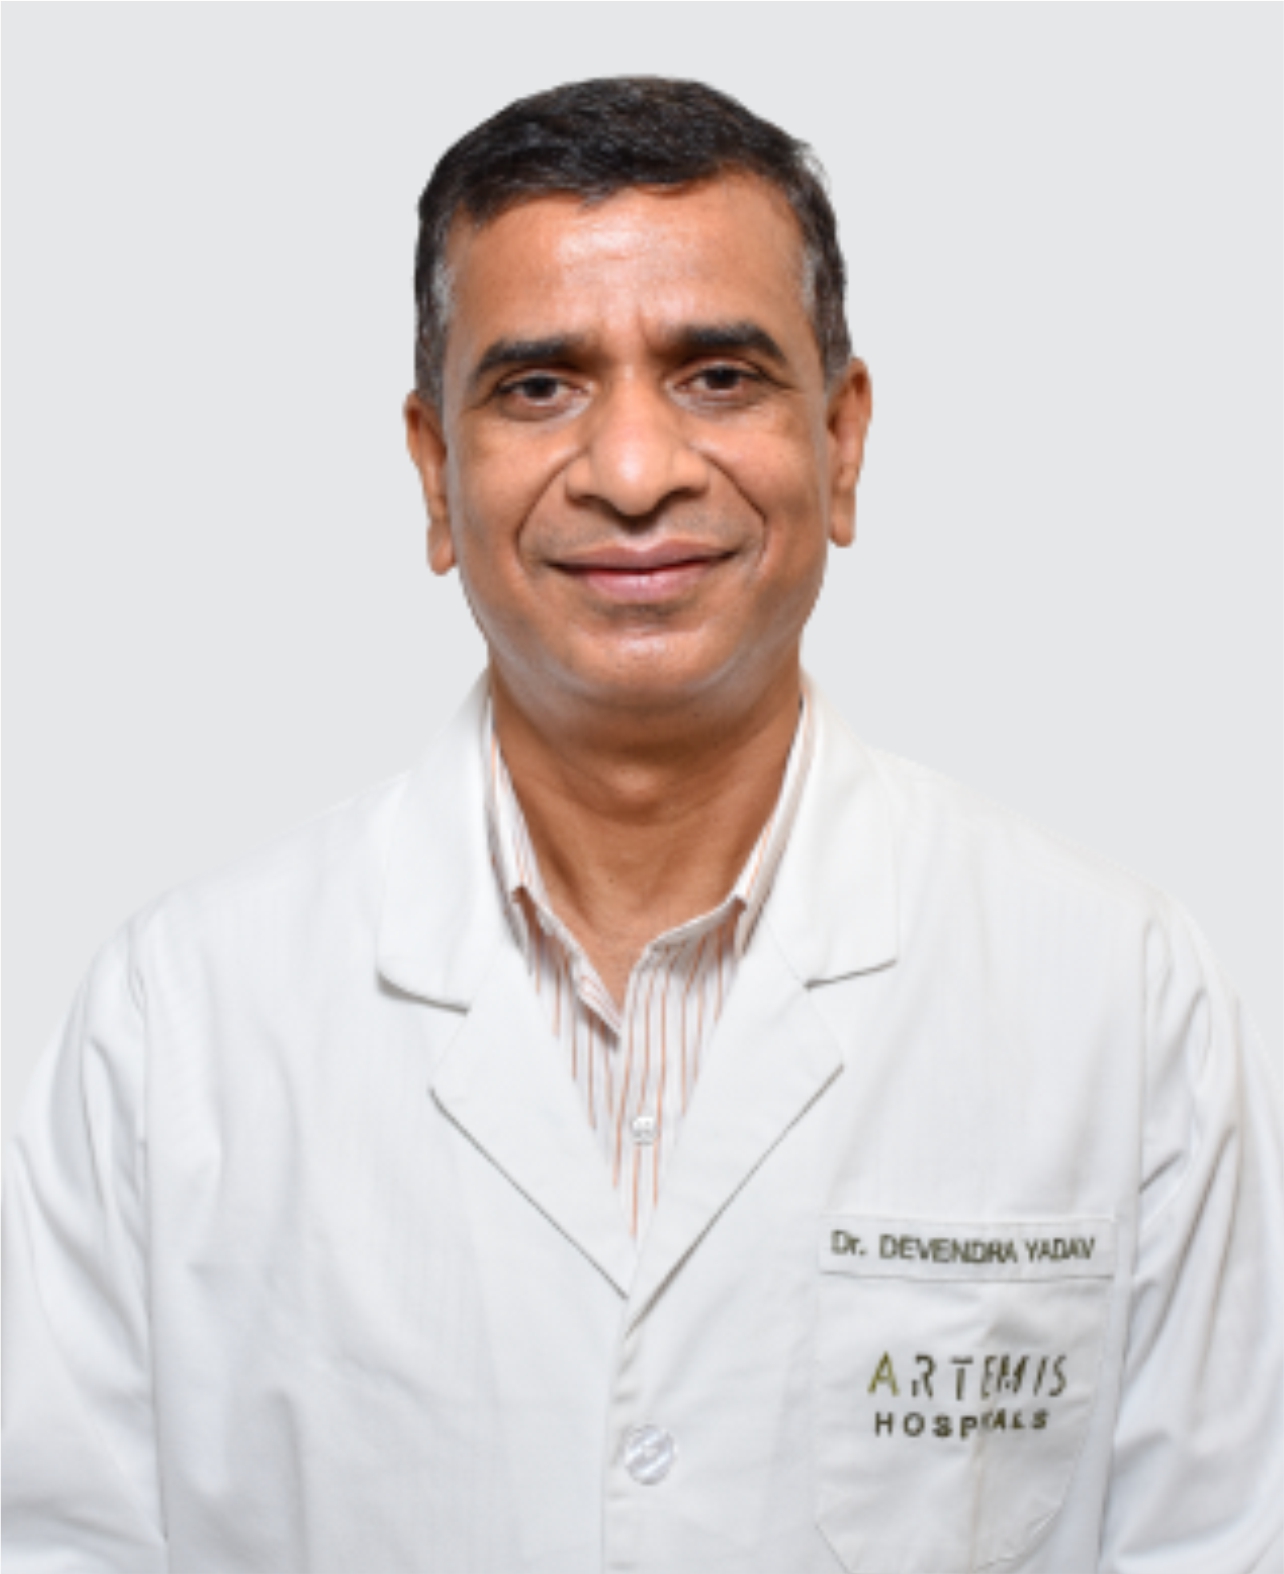 Dr. Devendra Yadav